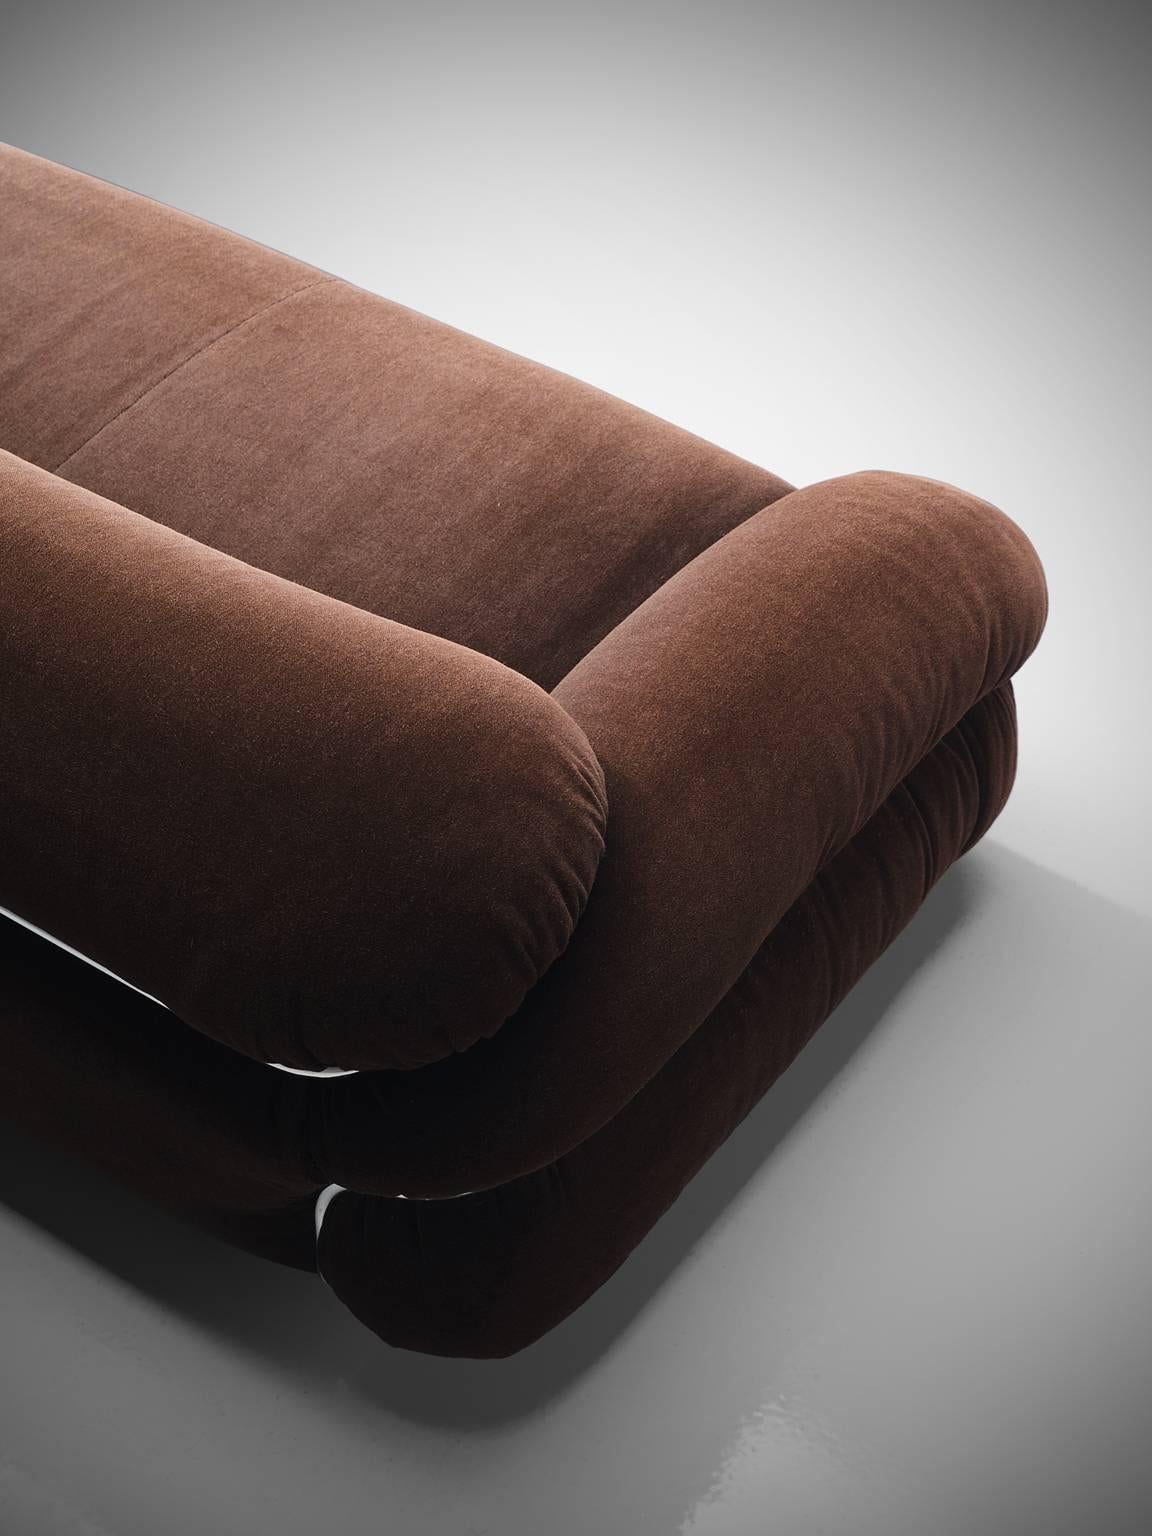 Gianfranco Frattini 'Sesann' Sofa in Original Brown Fabric   In Good Condition In Waalwijk, NL